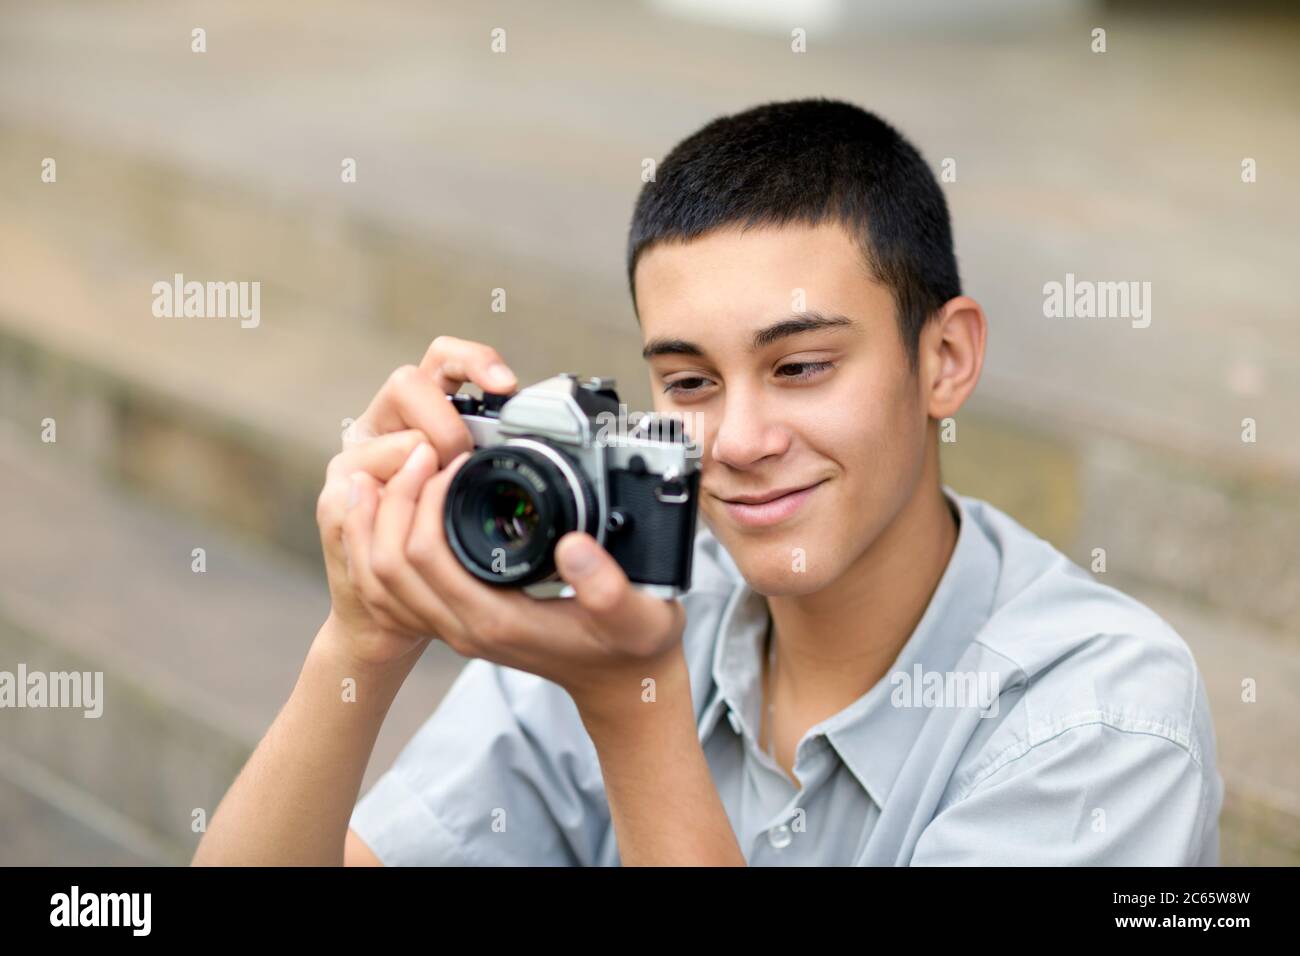 Junger Teenager mit einer alten Kamera, während er seine Aufnahme auf dem Rückschirm mit einem erfreuliches Lächeln in der Nähe prüft Stockfoto